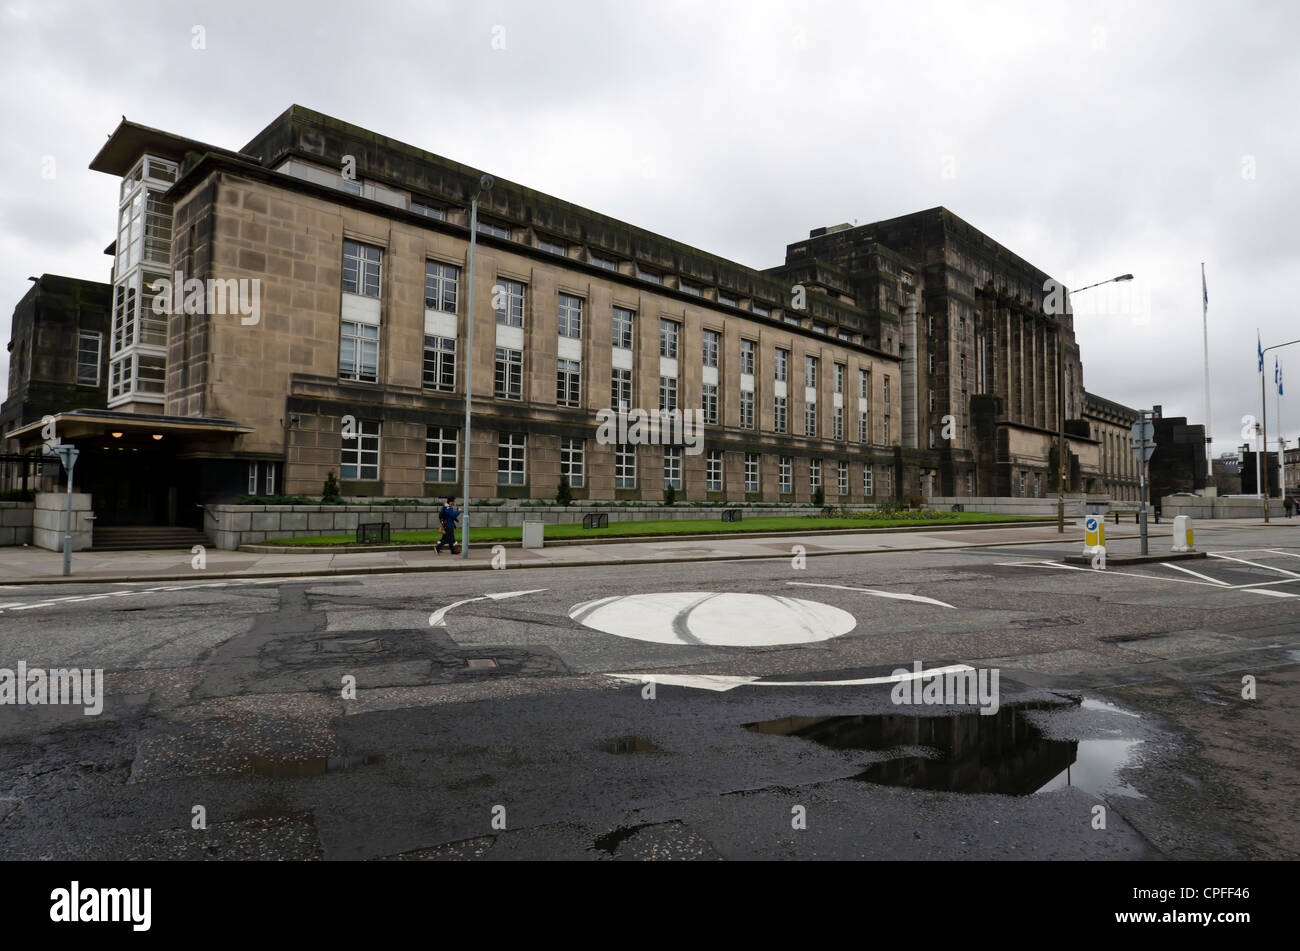 St Andrews House (admin bureaux pour le Parlement écossais) au centre d'Édimbourg, en Écosse. Banque D'Images